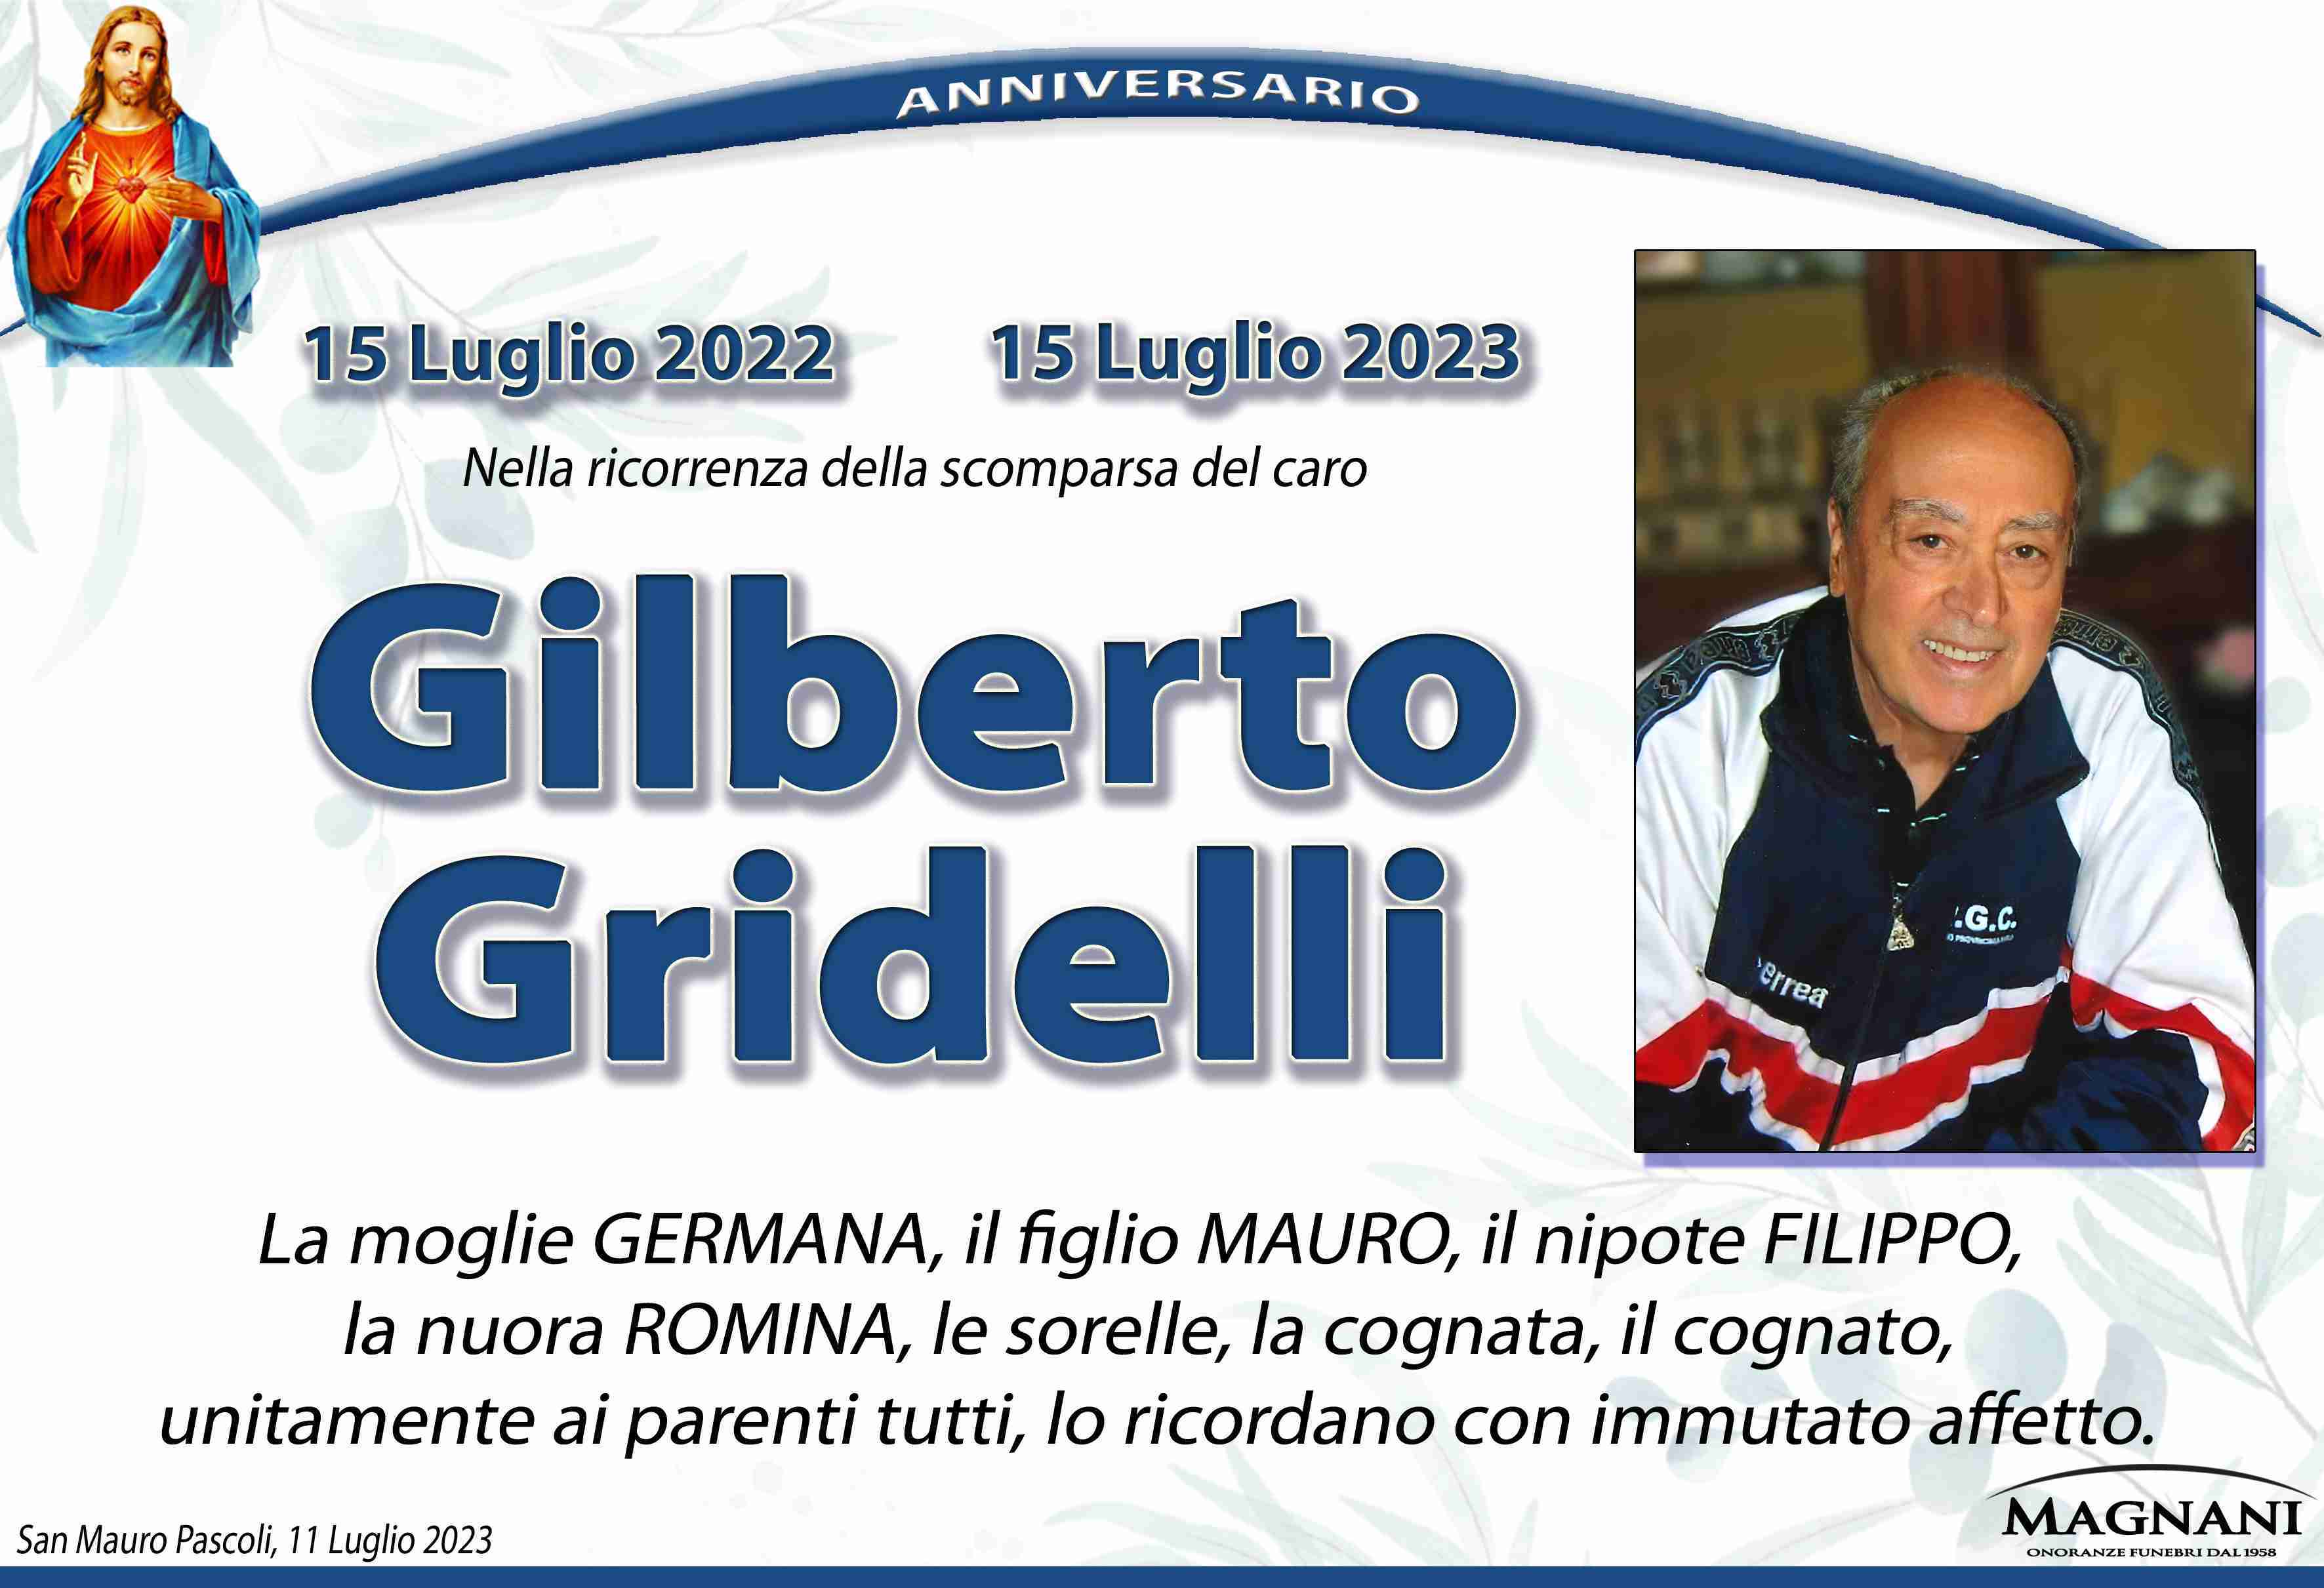 Gilberto Gridelli